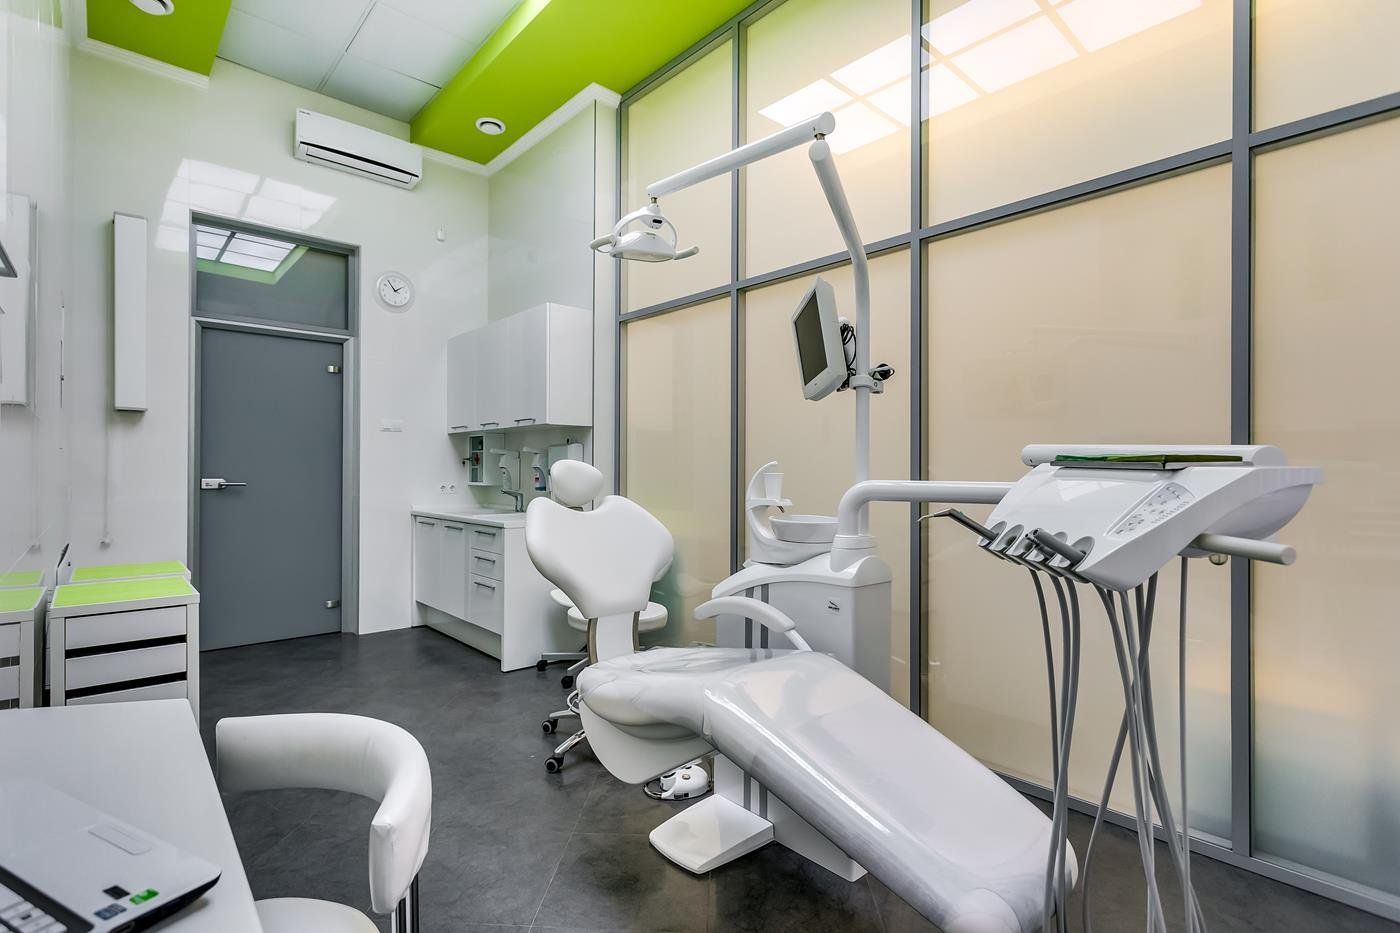 Най-добре платените стоматологични клиники за деца в Нижни Новгород през 2020 г.